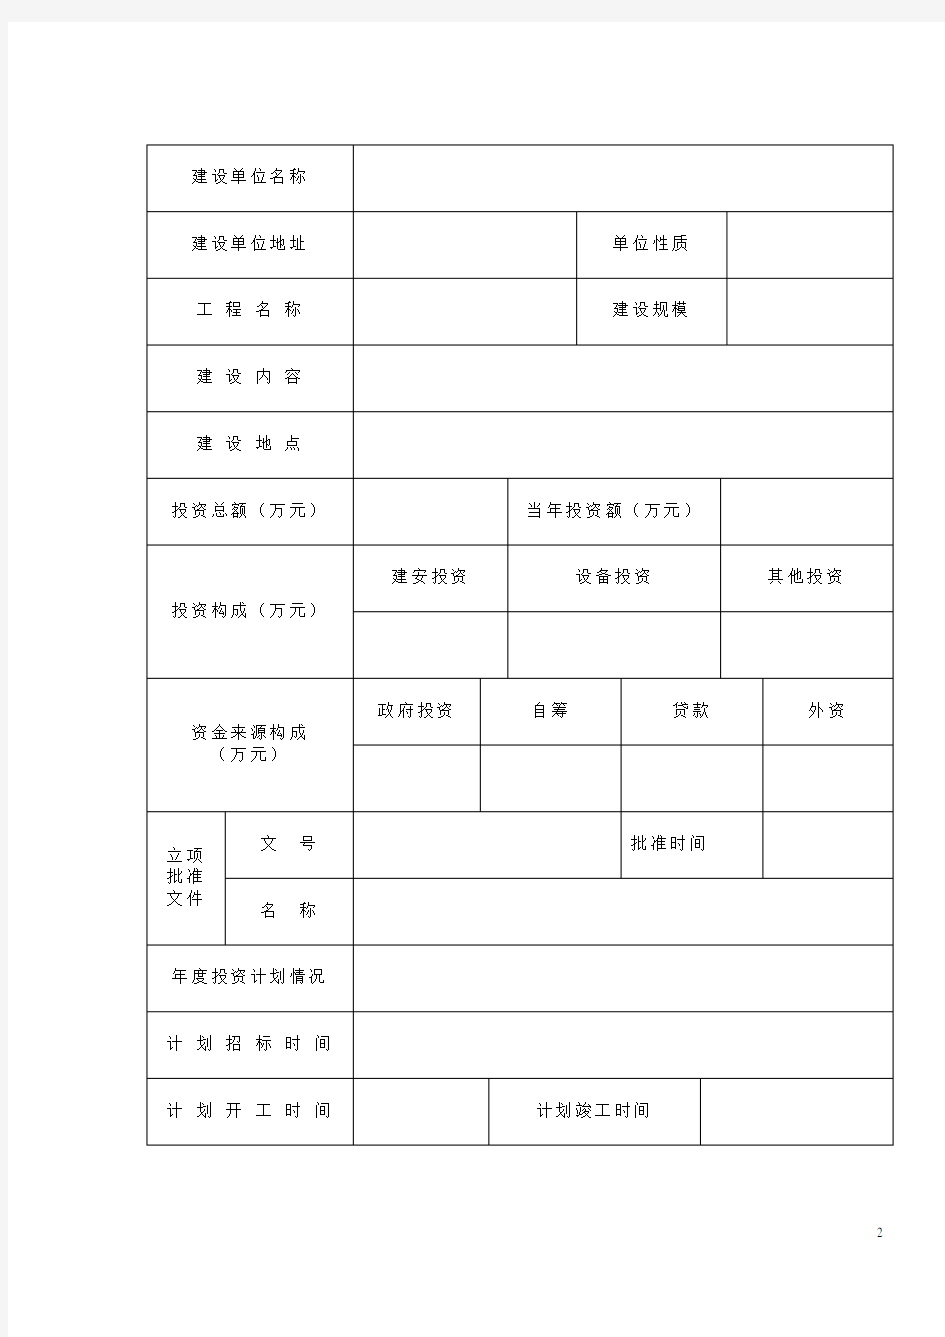 湖北省建设工程-报建登记表